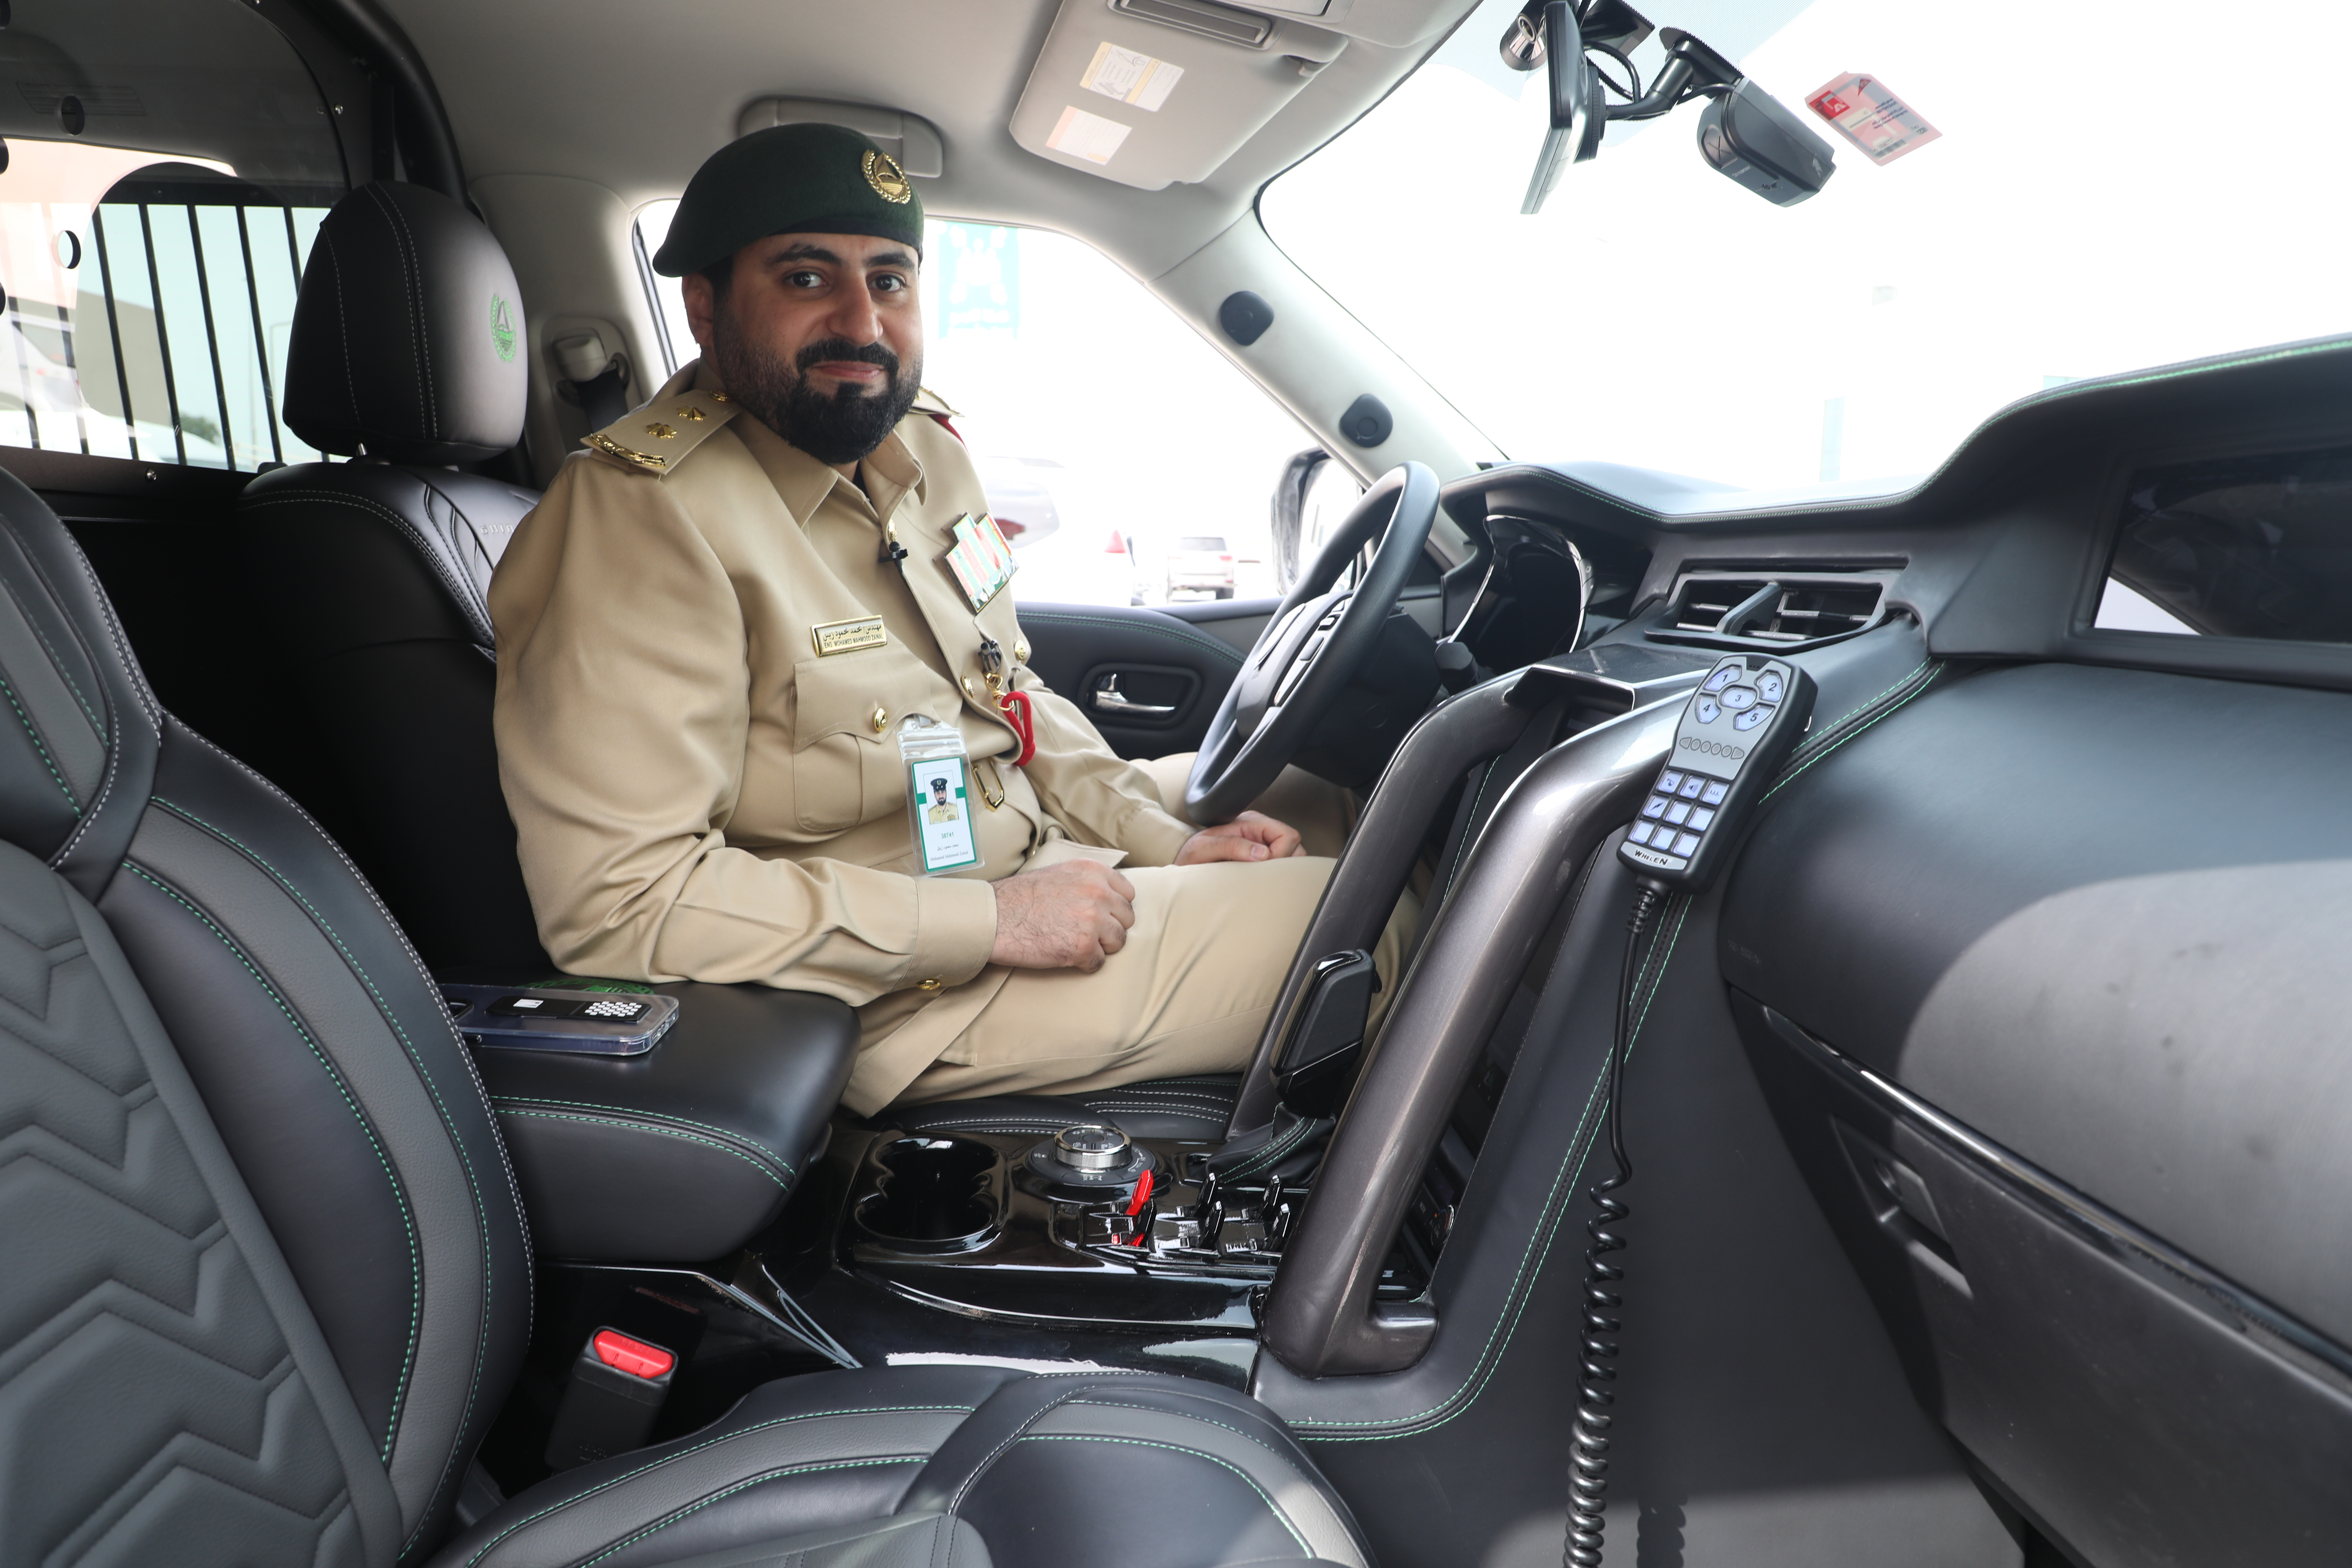 On the road with Dubai Police in UAE-built Ghiath patrol car